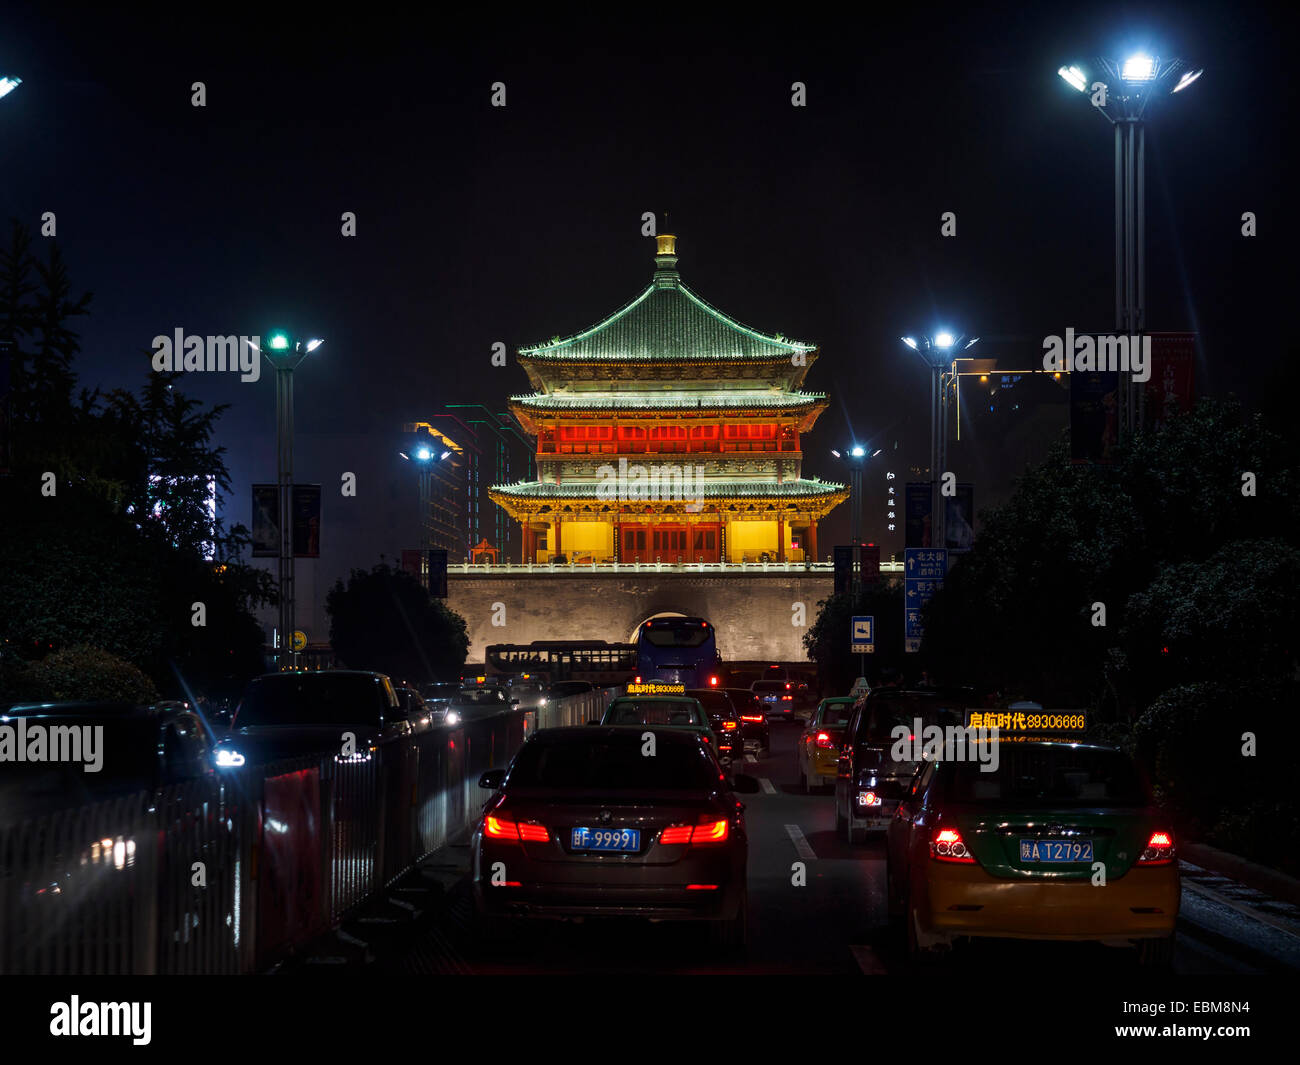 Avis de clocher au milieu d'un embouteillage durant la nuit à Xian, Chine Banque D'Images